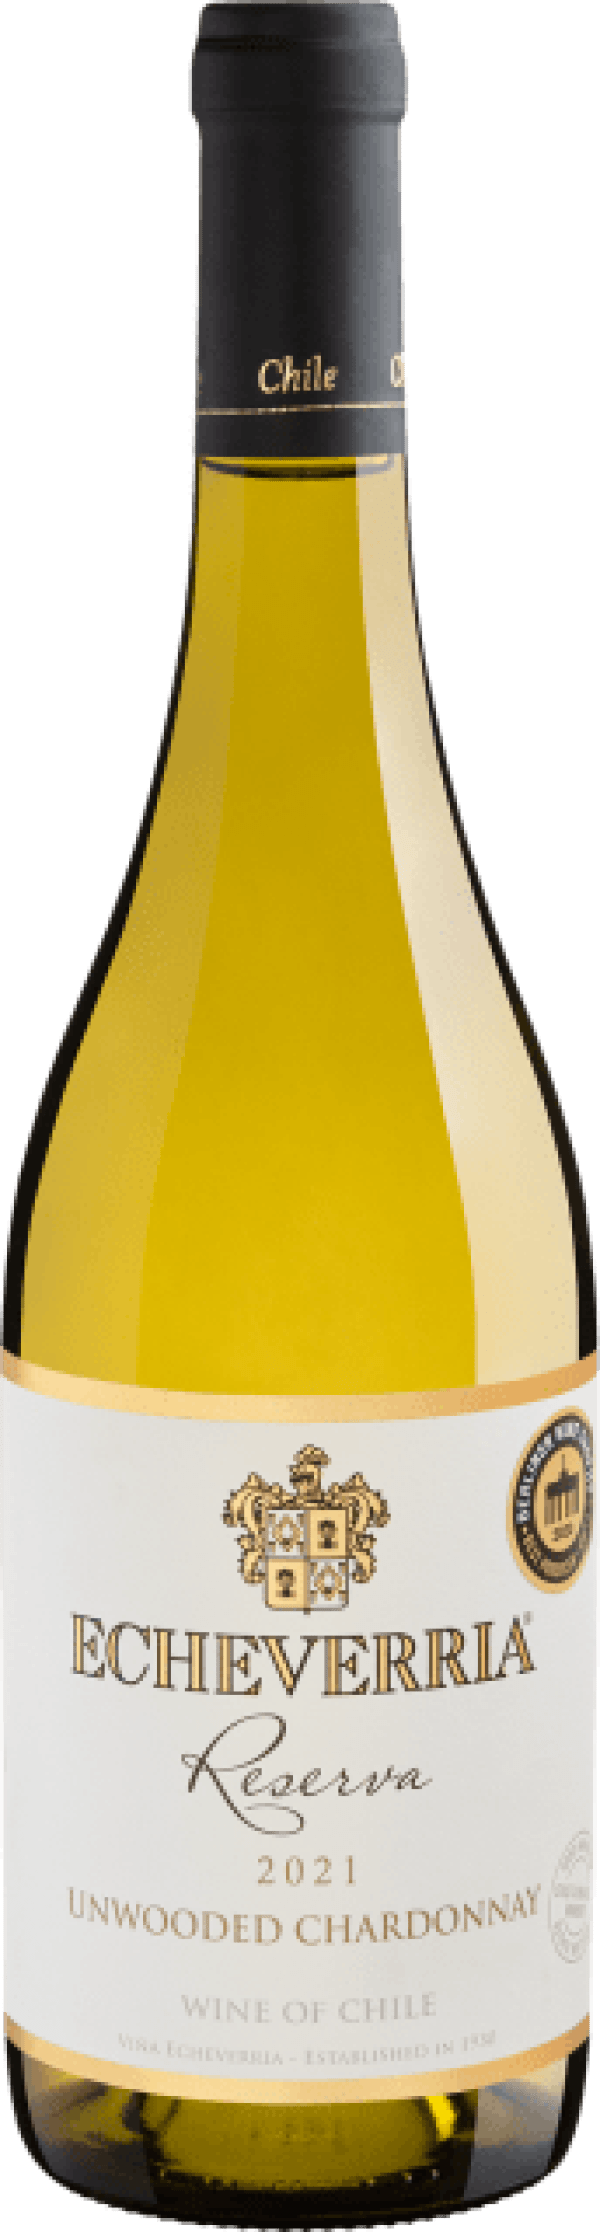 Echeverria Reserva Unwooded Chardonnay 2021